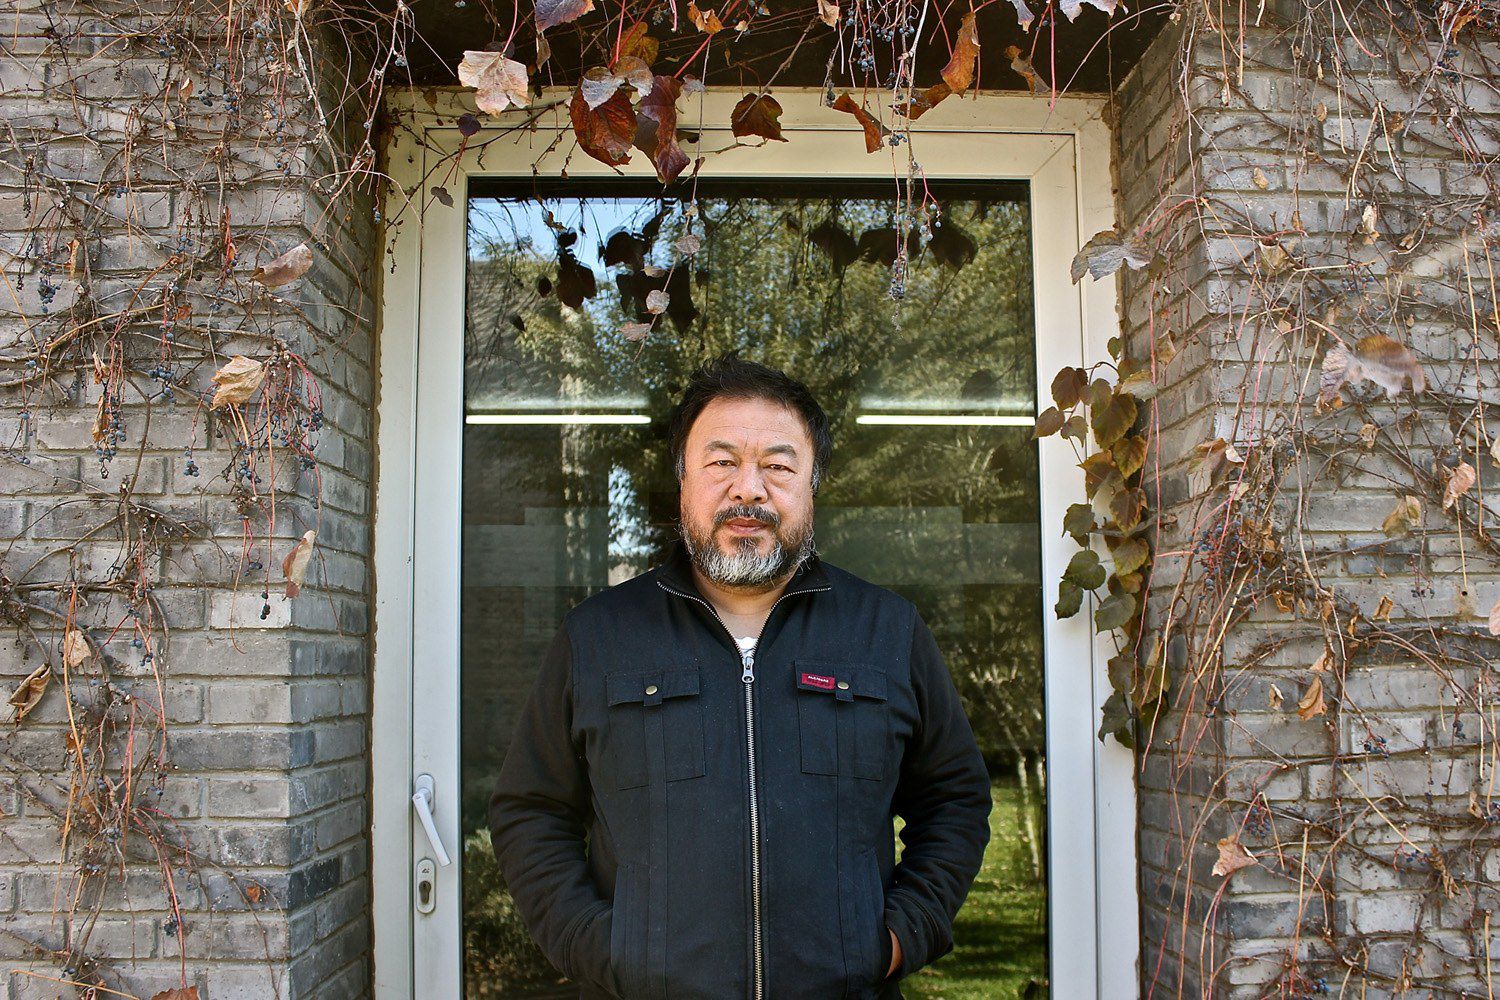 Artista e activista Ai Weiwei está em Portugal a preparar intervenção